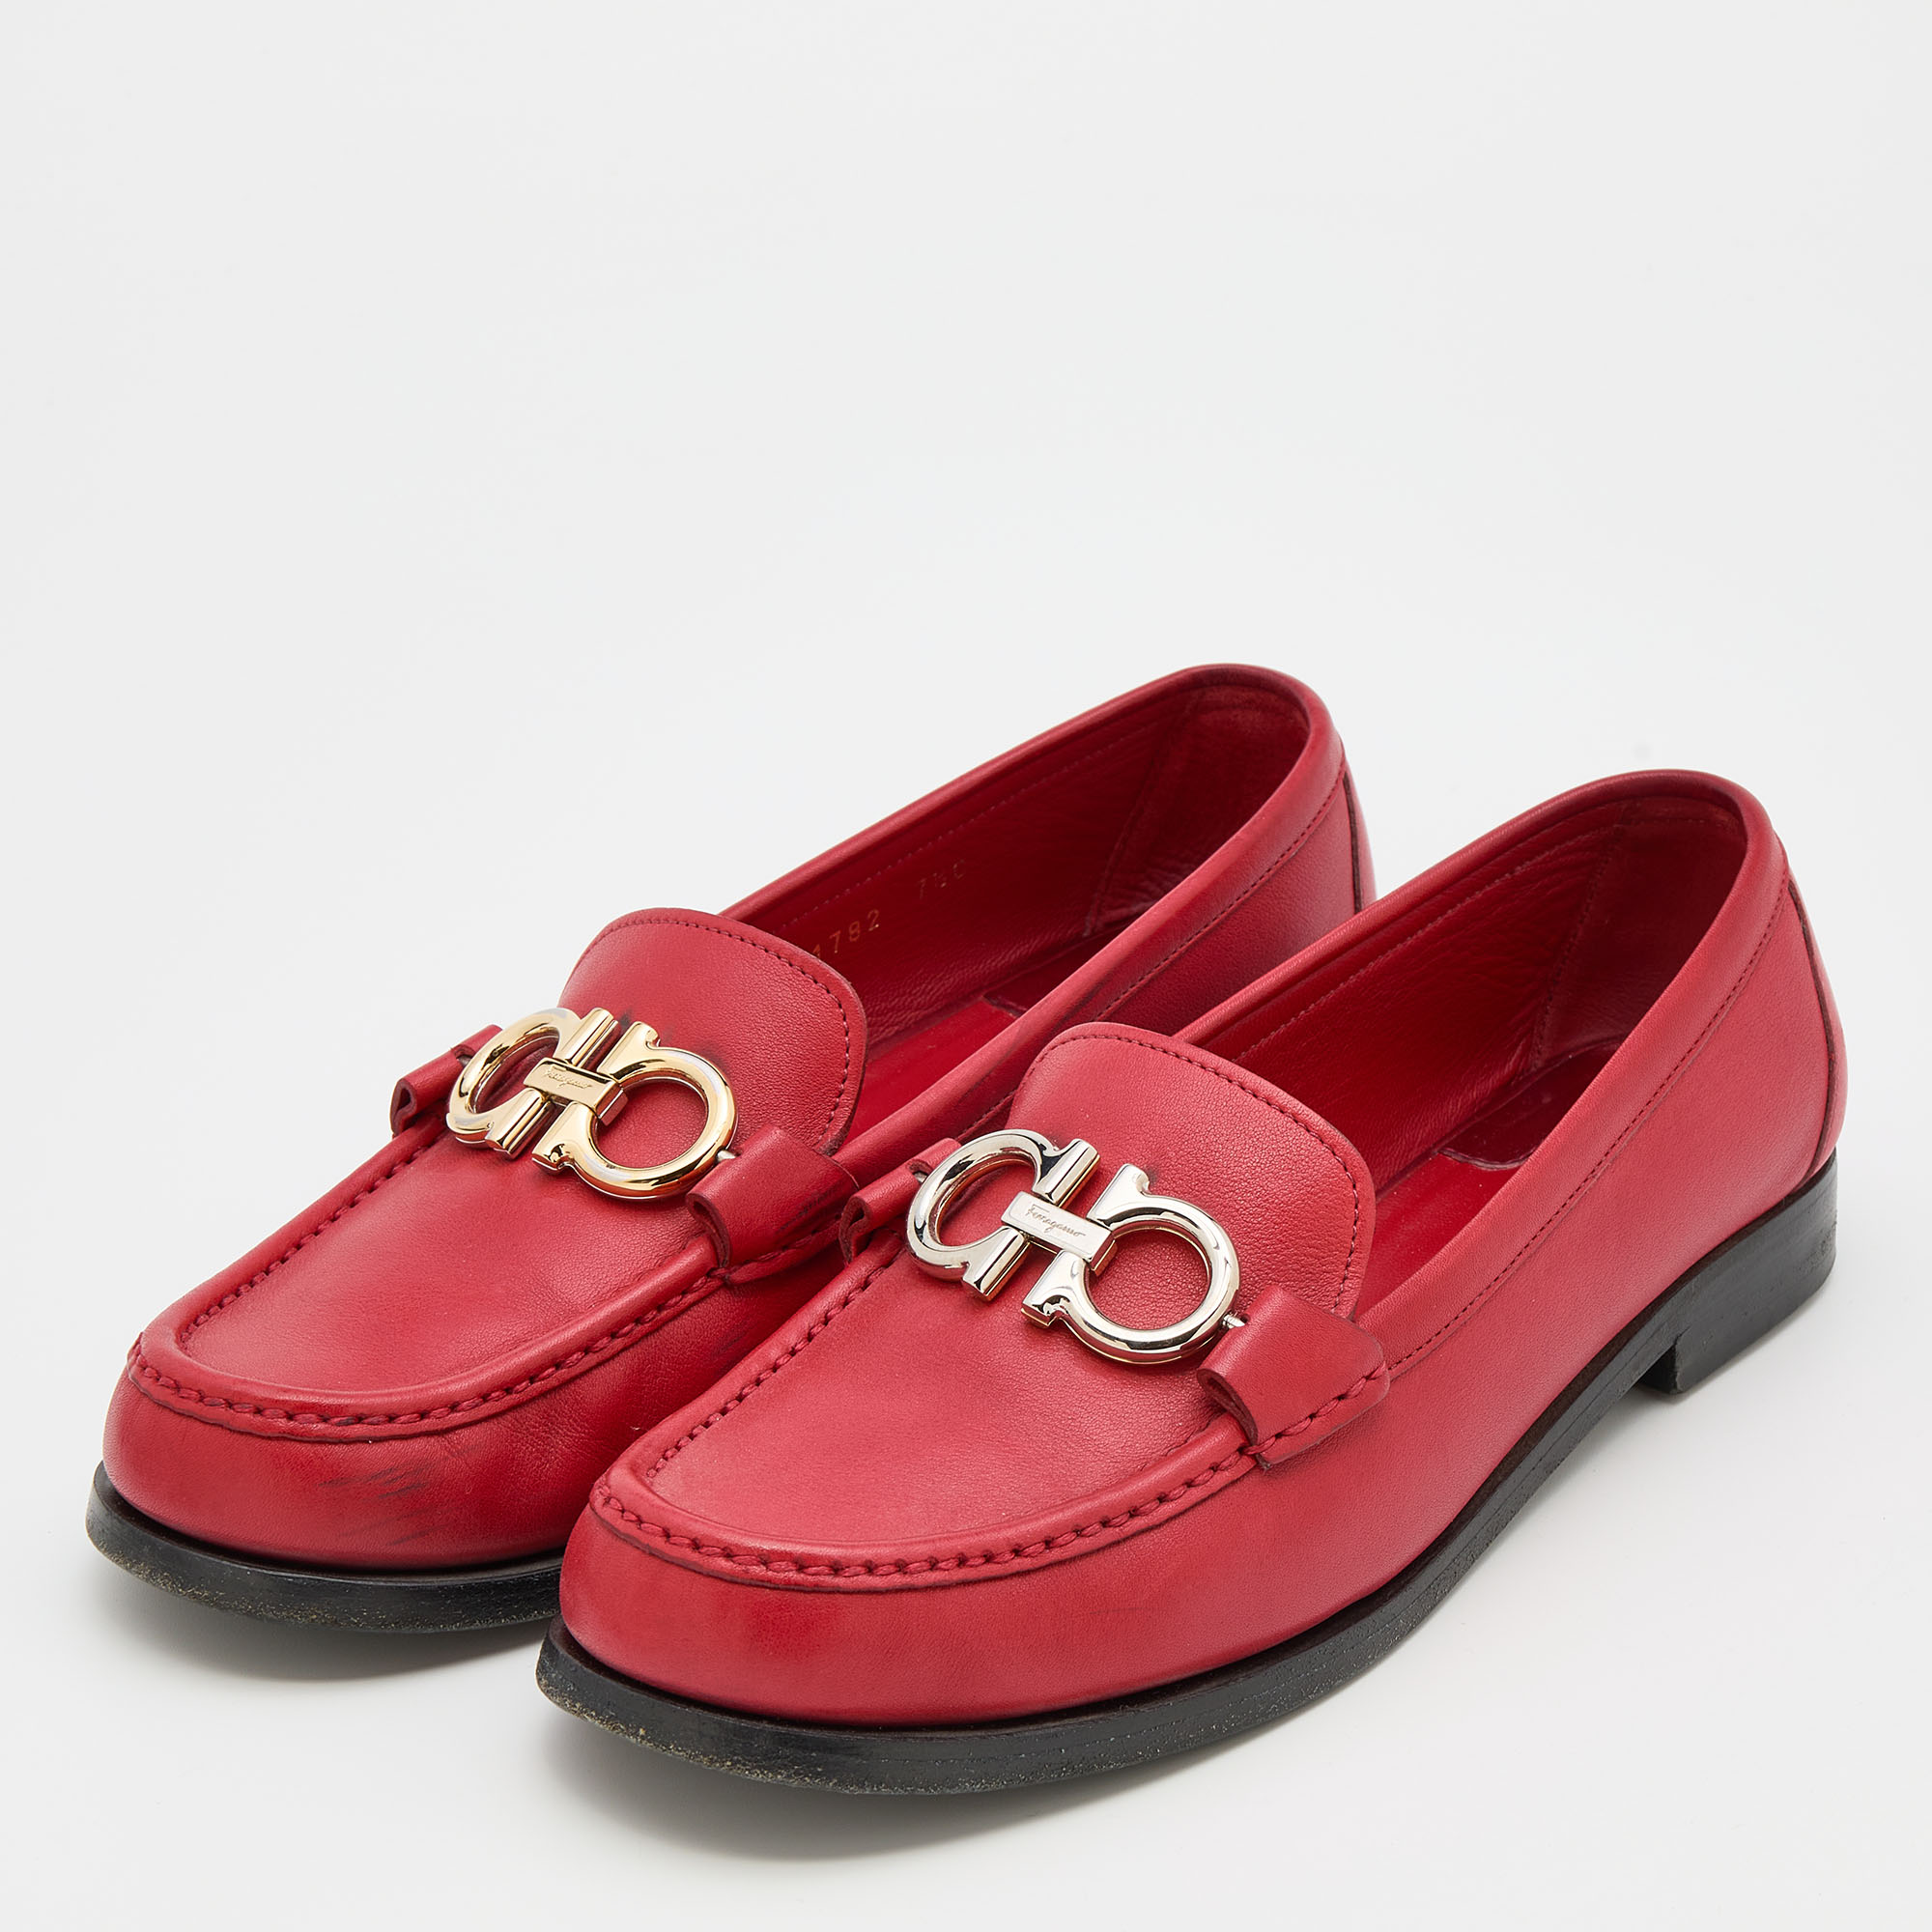 

Salvatore Ferragamo Red Leather Rolo Gancini Loafers Size